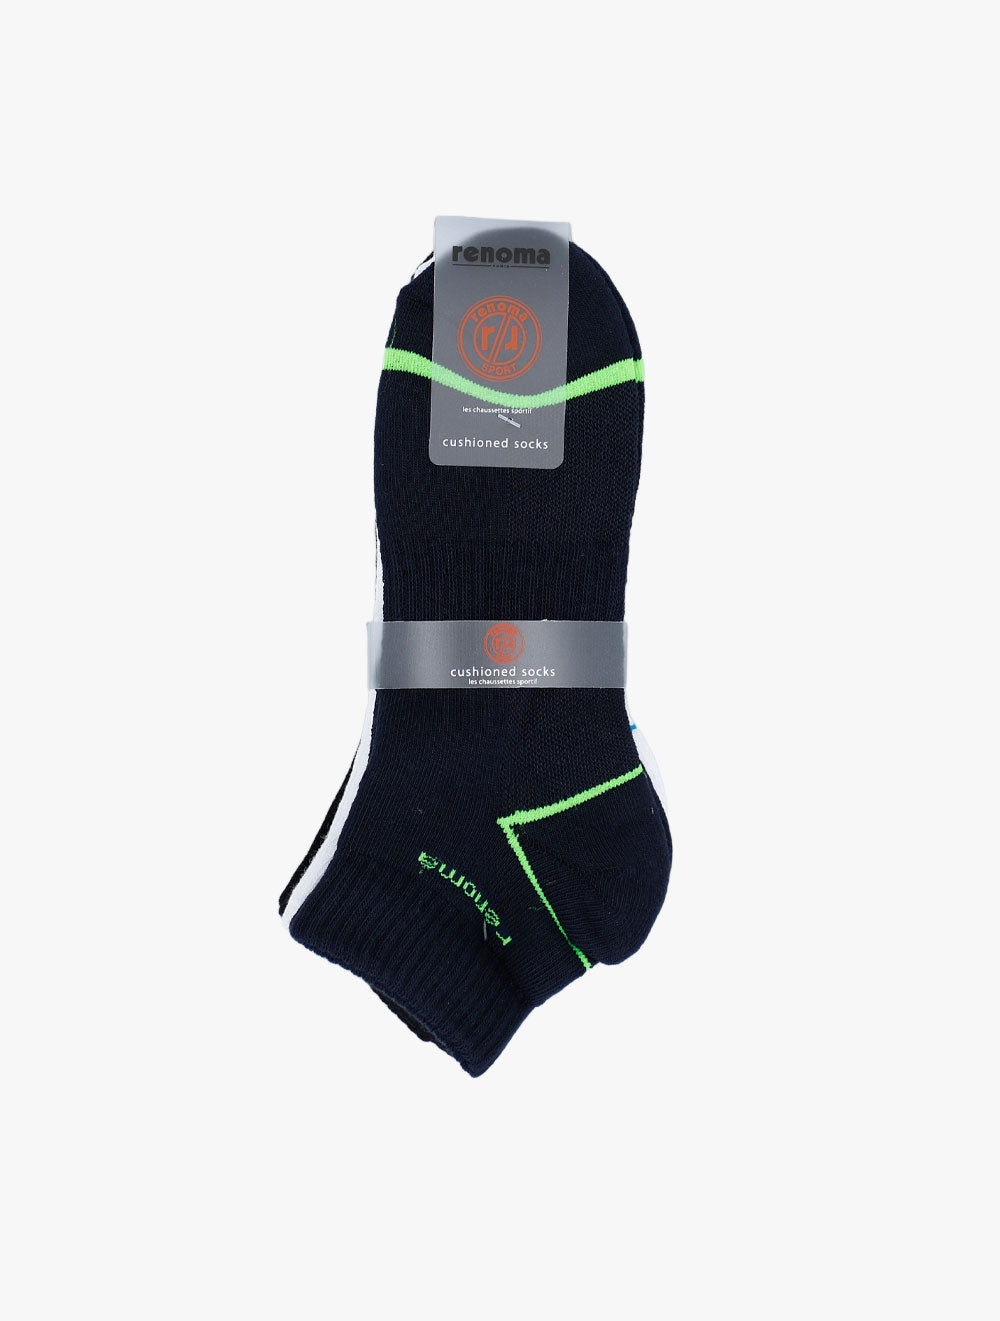 RENOMA
Sport Sock 3 In 1 ROA311